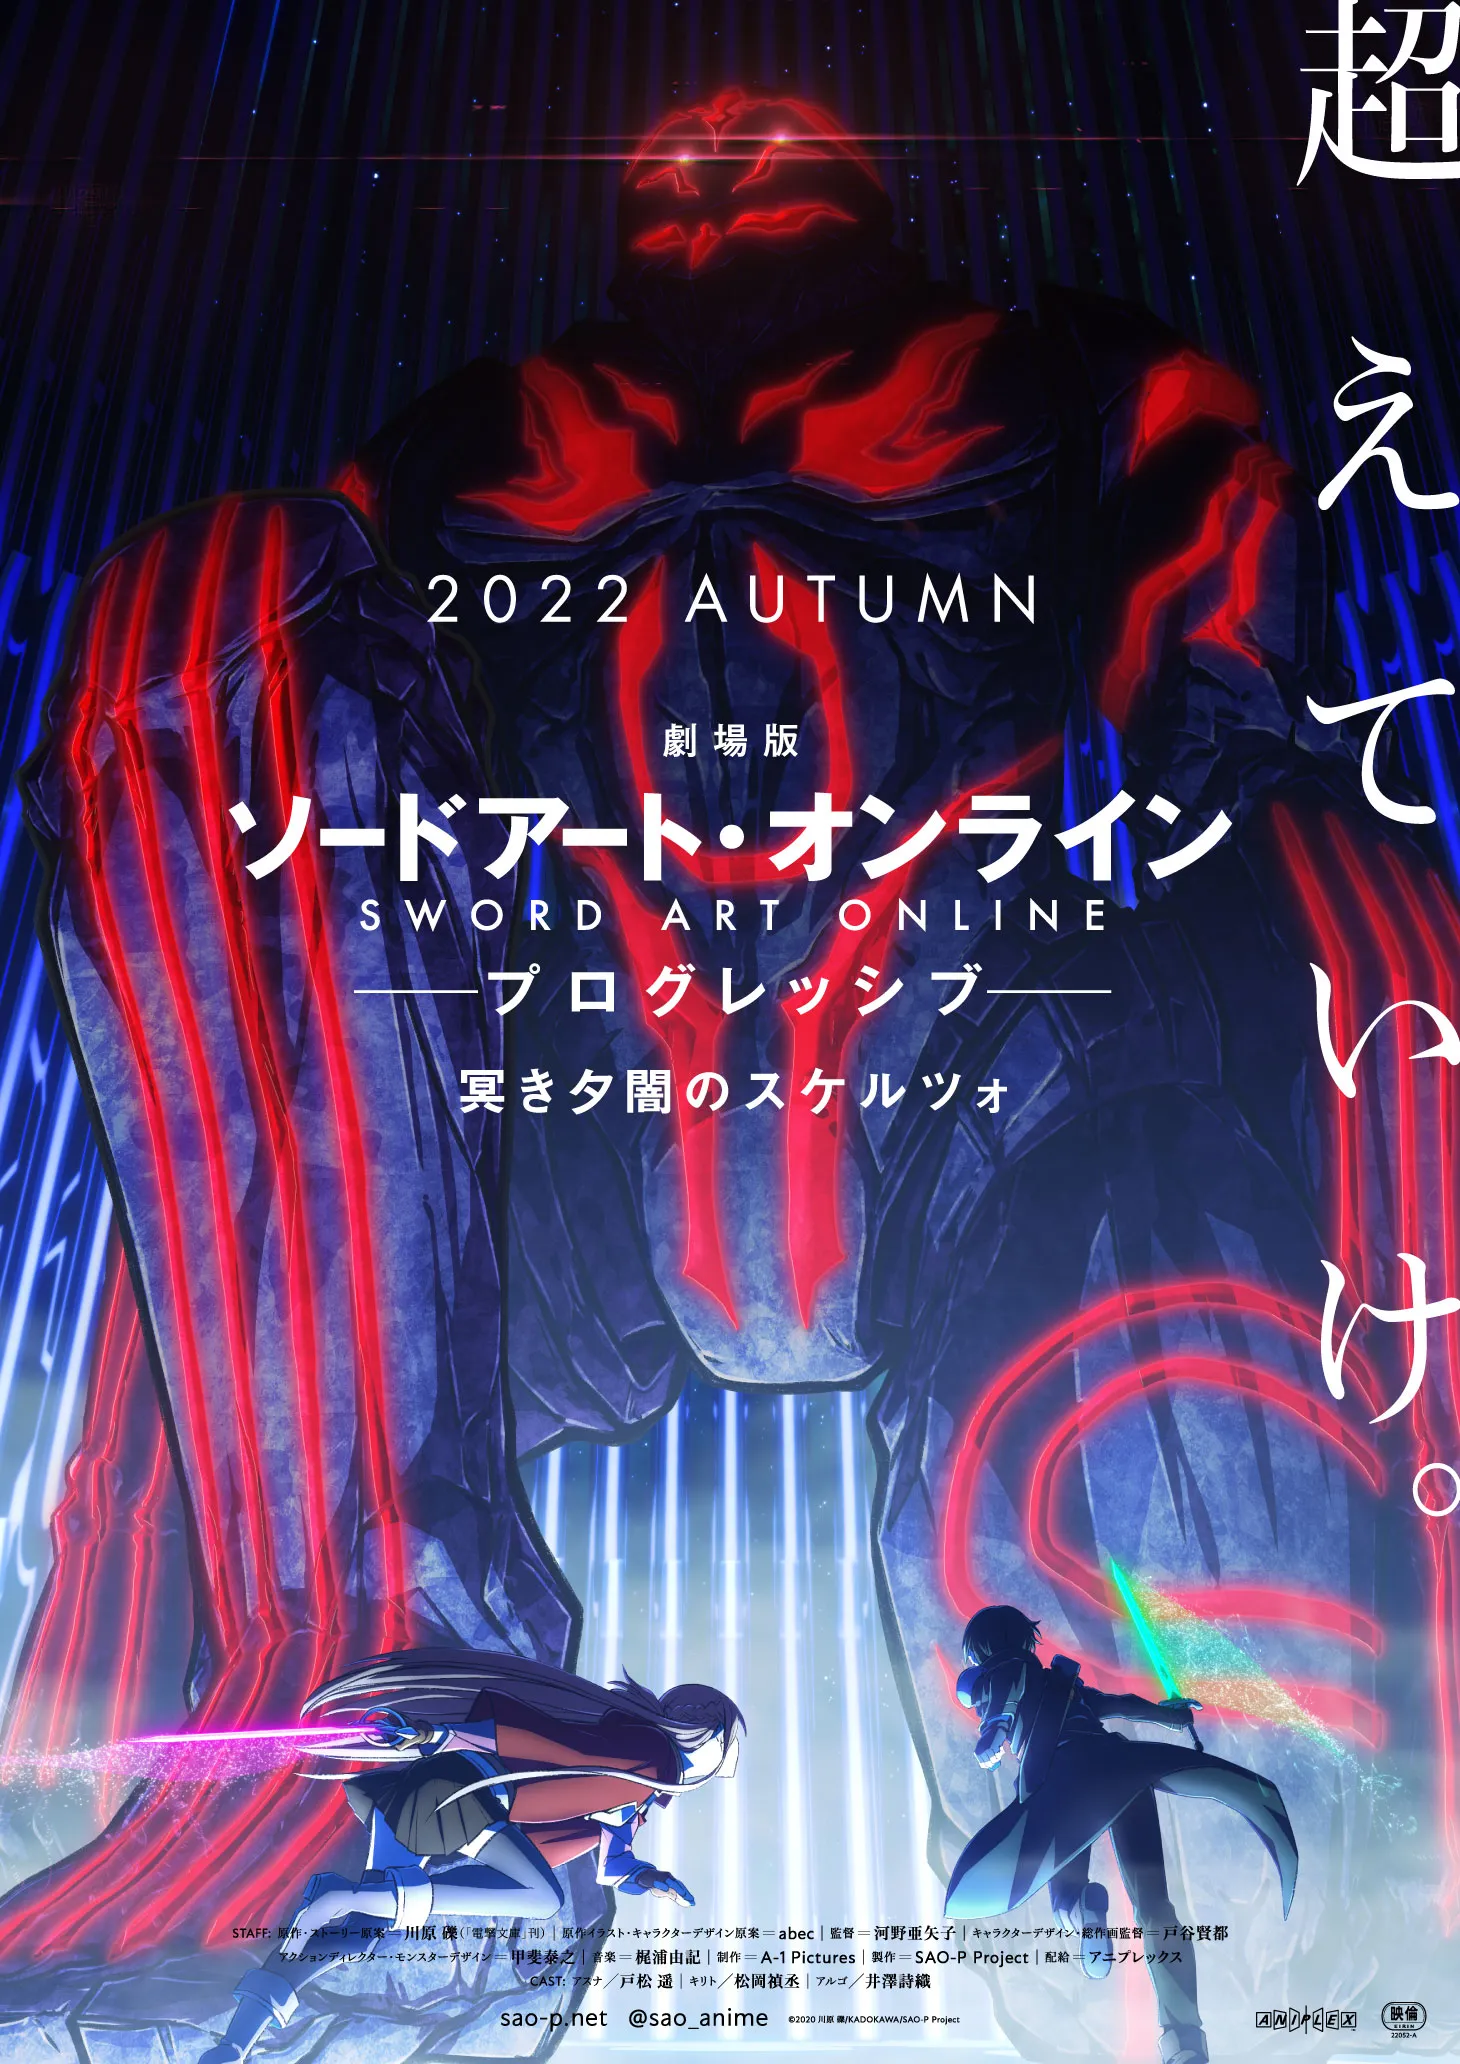 Sword Art Online's Next Film Set For 2022 Release!, Anime News